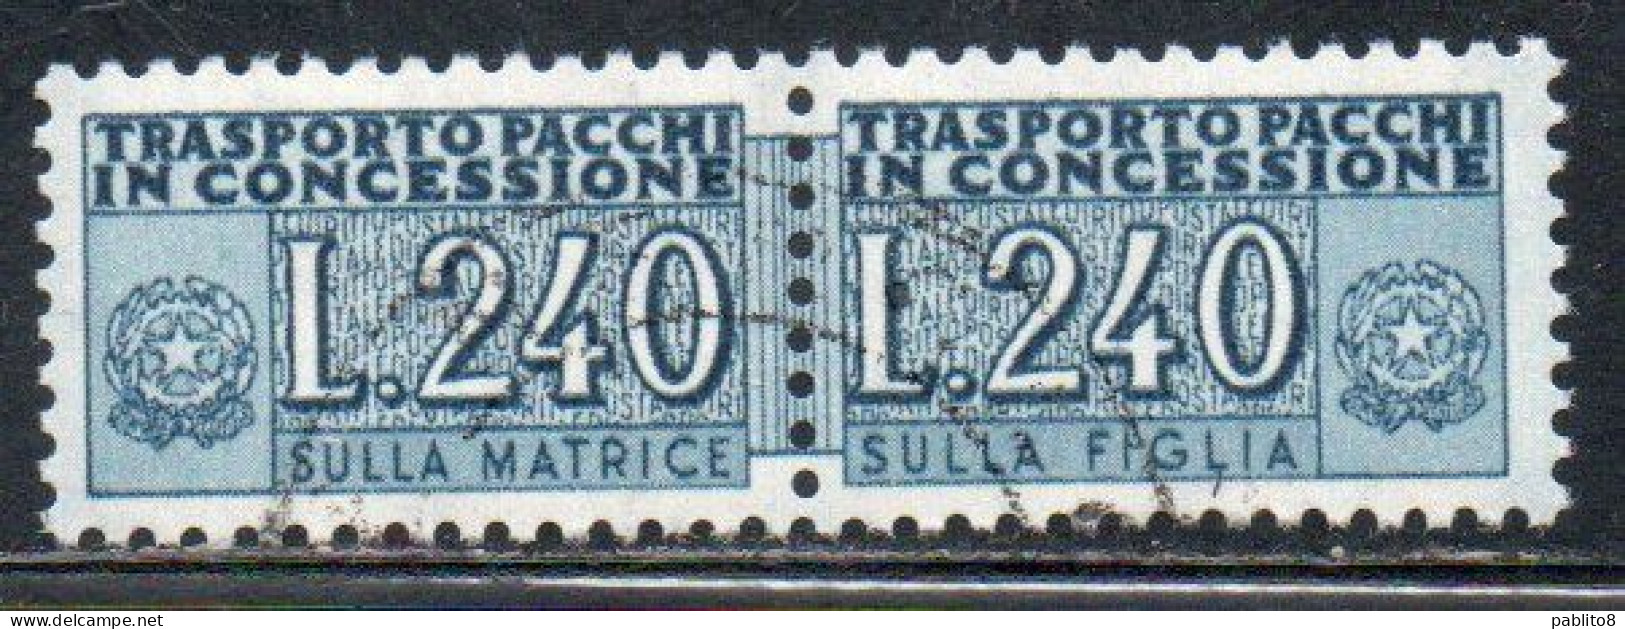 ITALIA REPUBBLICA ITALY REPUBLIC 1955 1981 PACCHI IN CONCESSIONE PARCEL POST STELLE STARS 1966 LIRE 240 USATO USED - Pacchi In Concessione